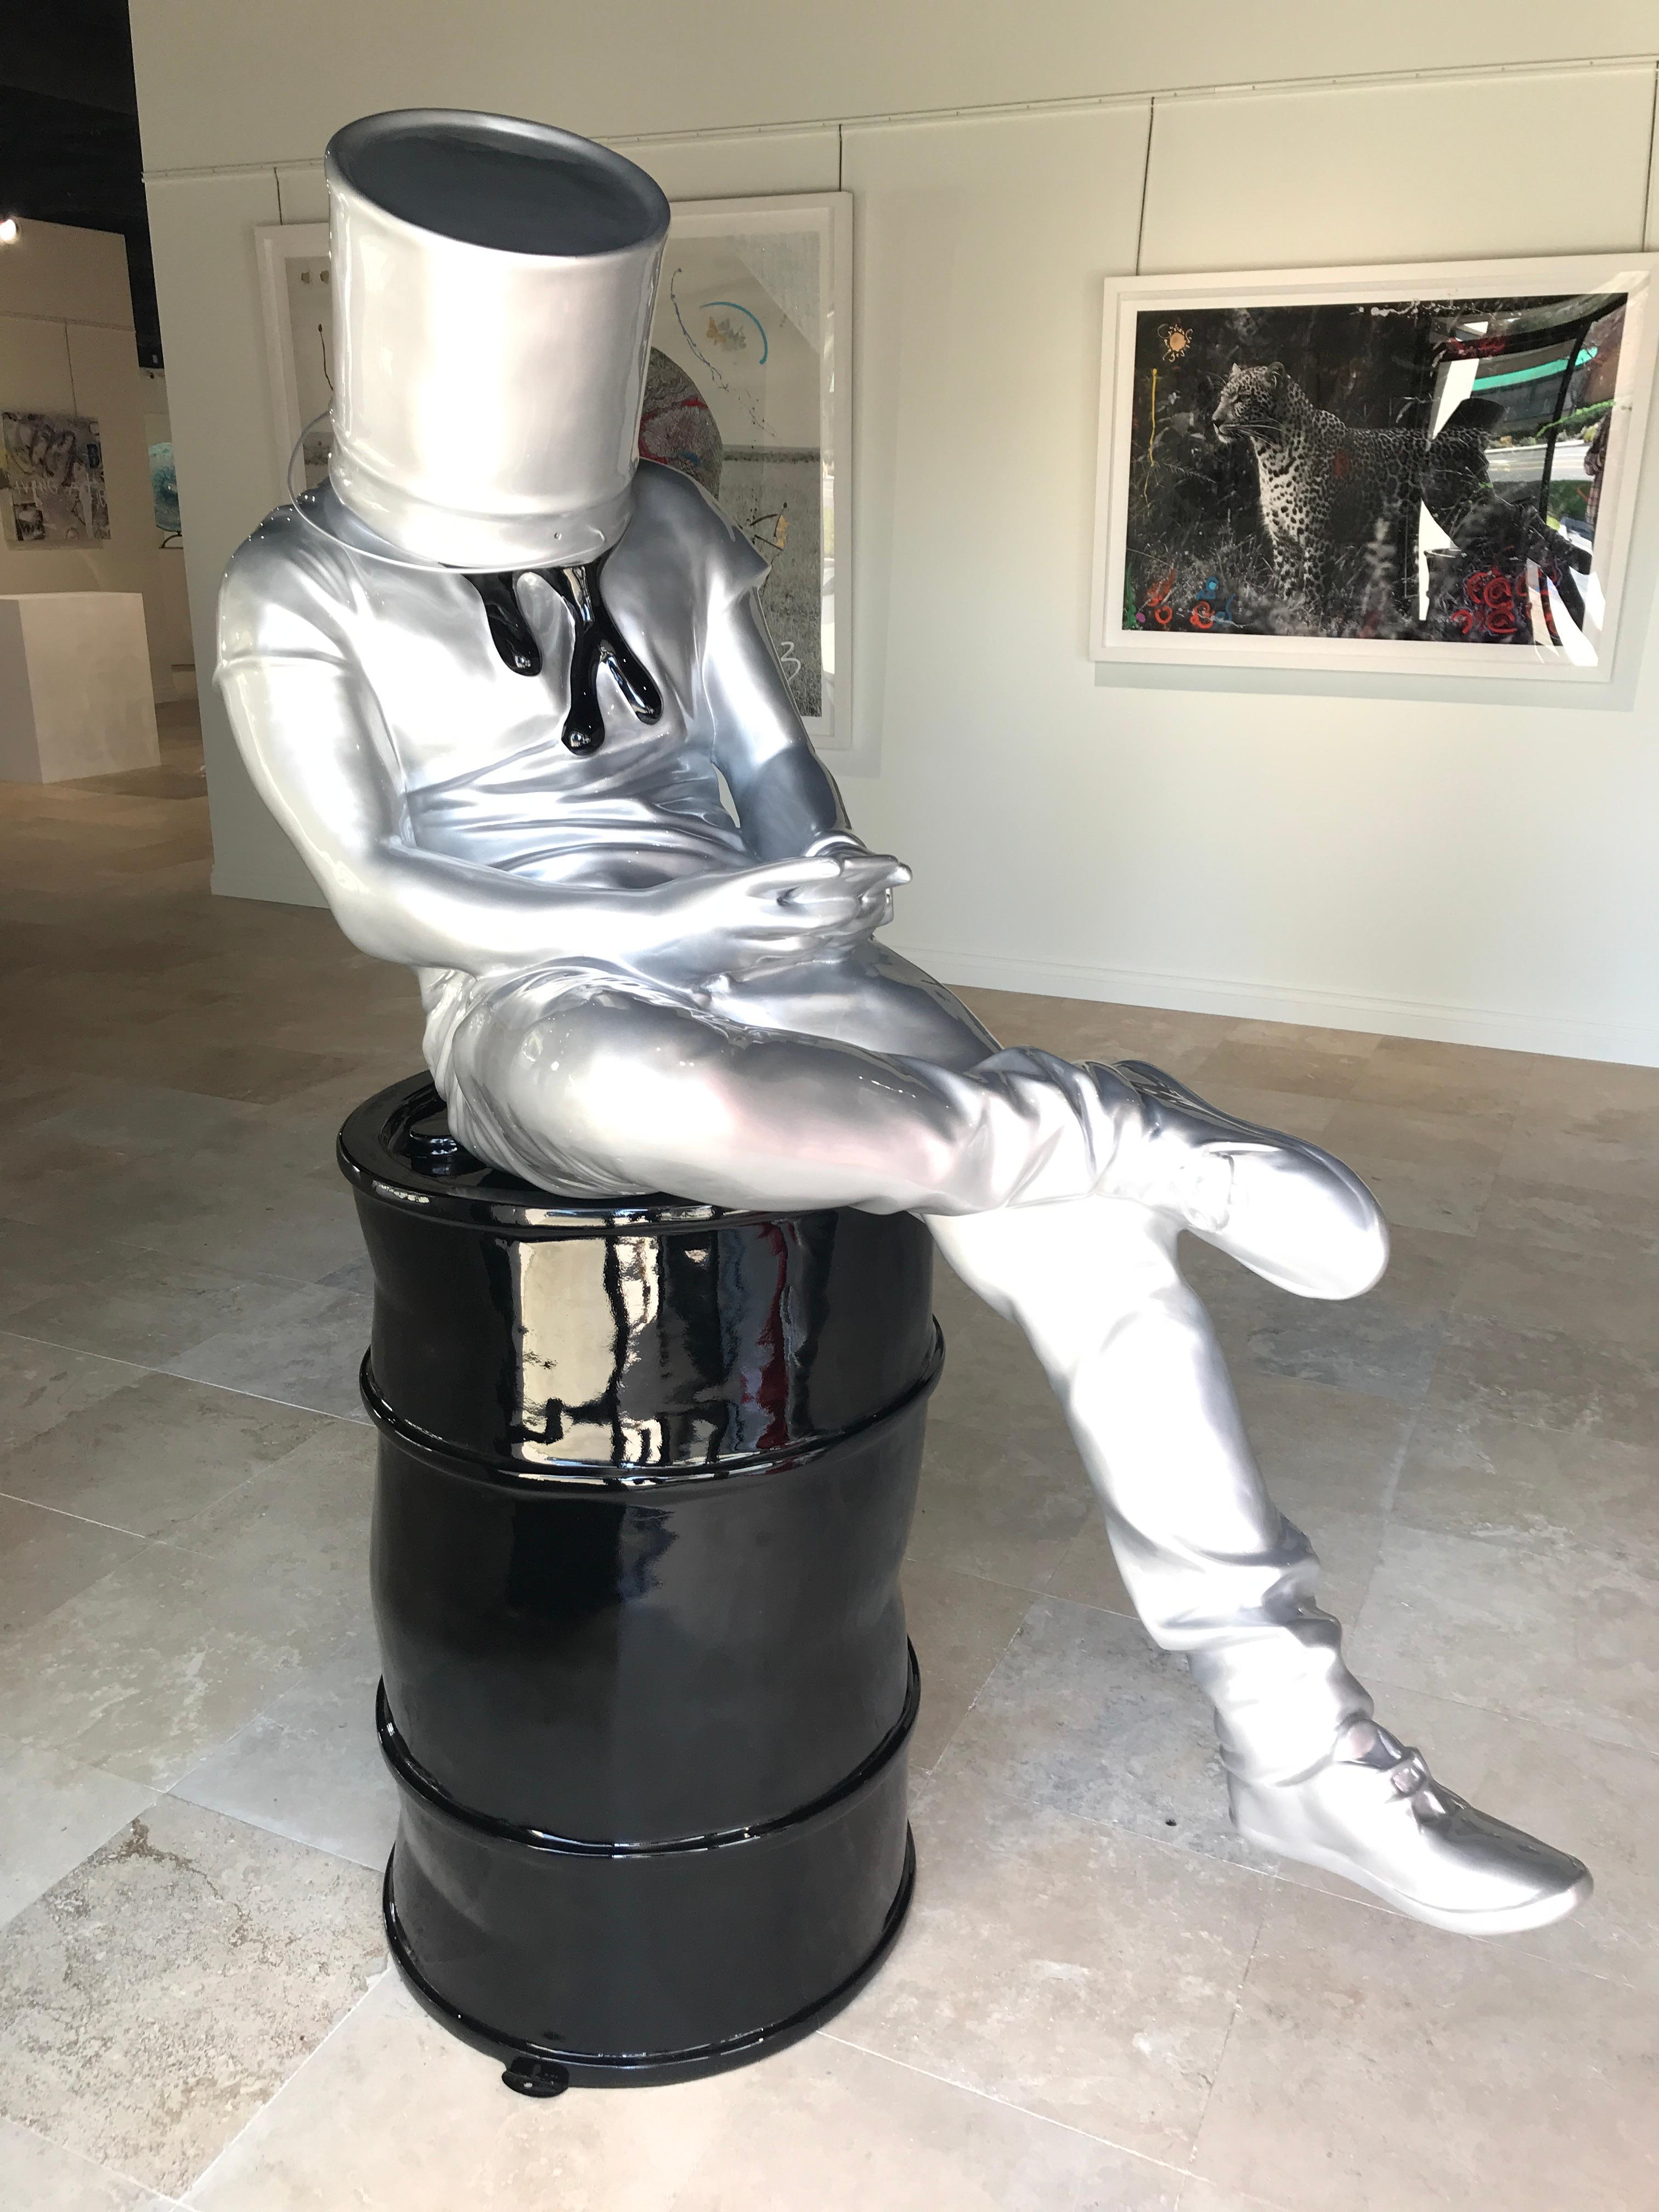 David David Figurative Sculpture - Blind - The Head in the Art 